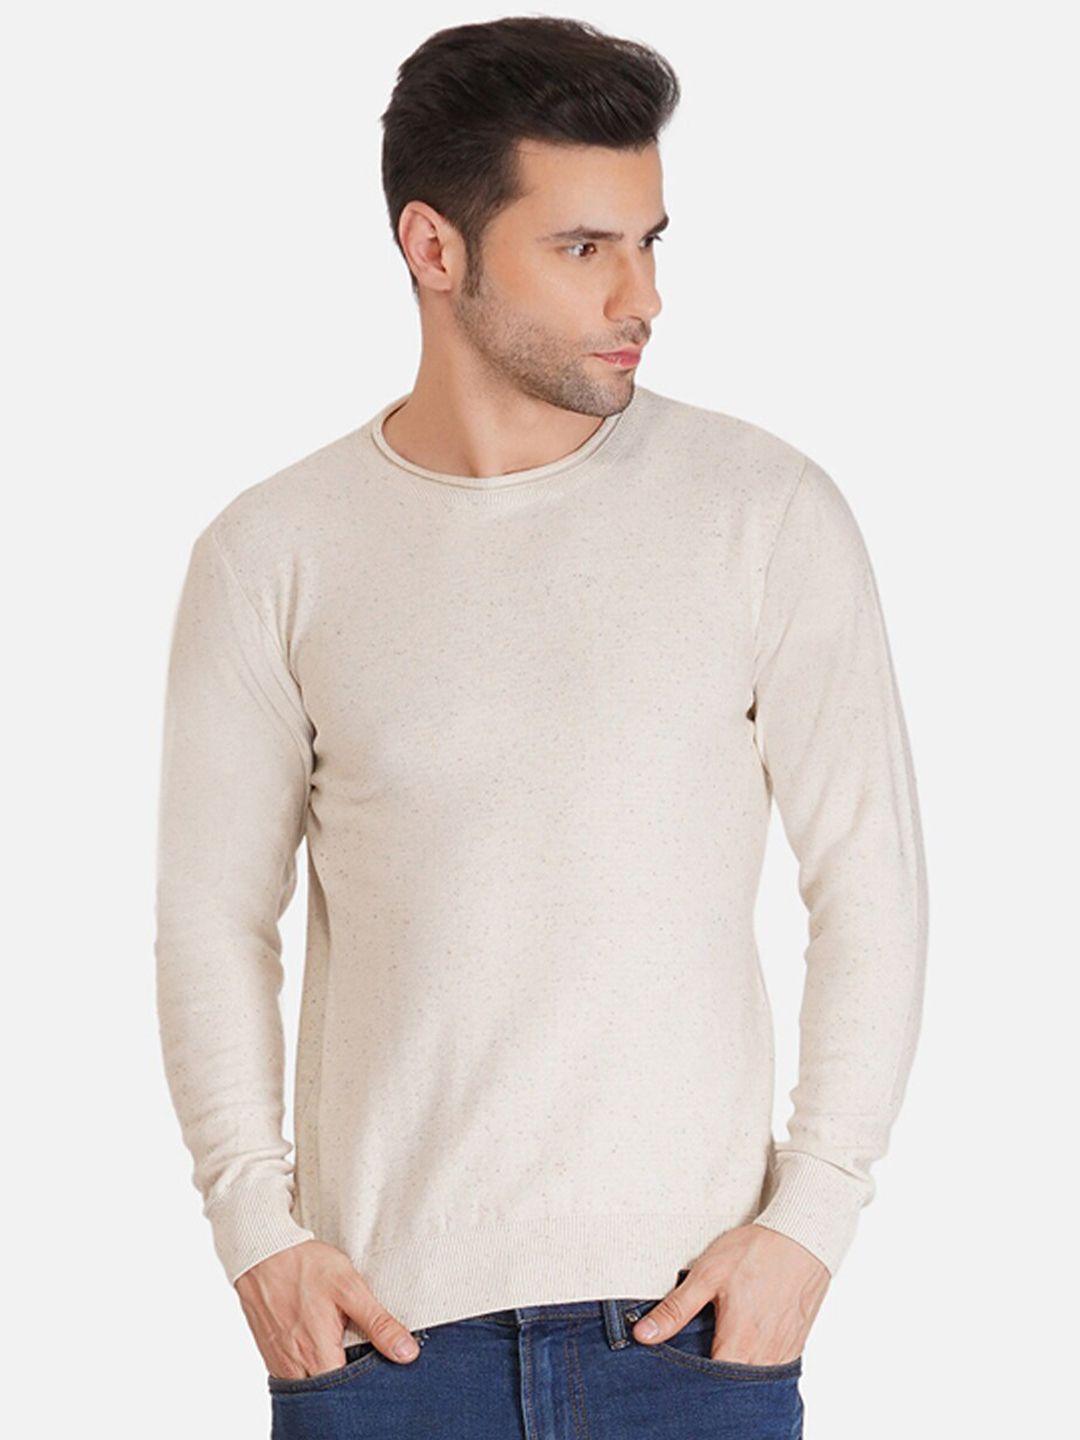 joe-hazel-men-beige-solid-cotton-pullover-sweater